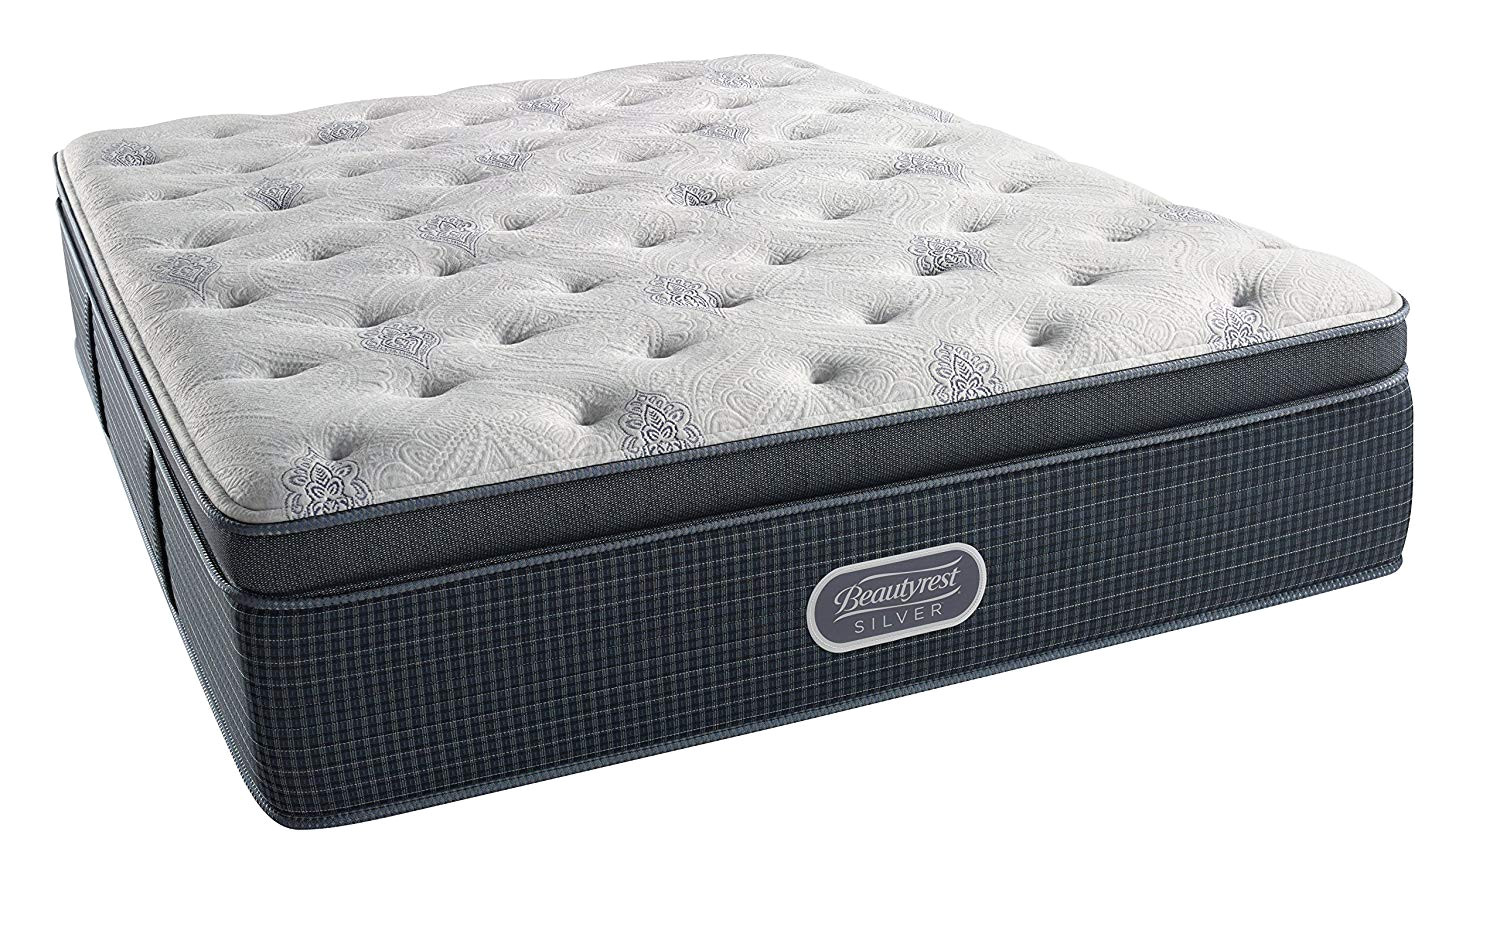 cushion firm pillow top full mattress item 121931